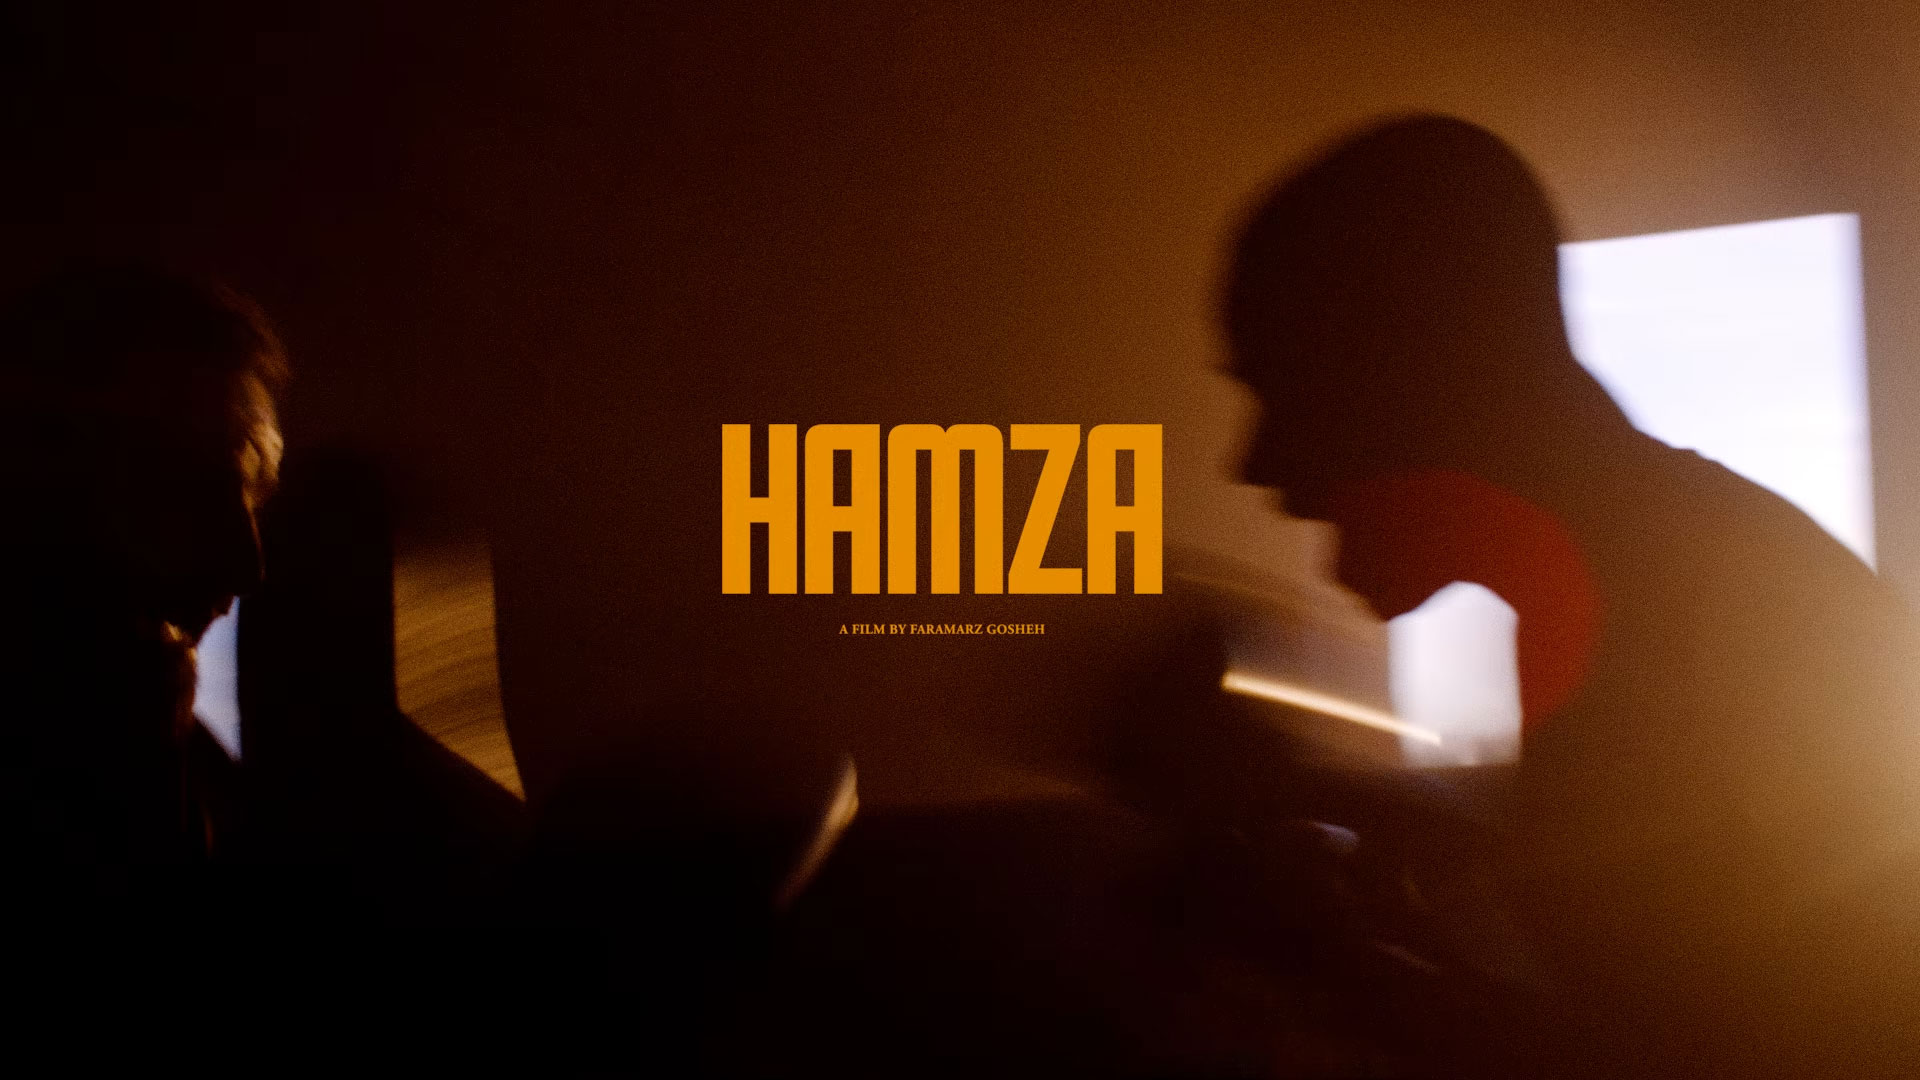 Hamza